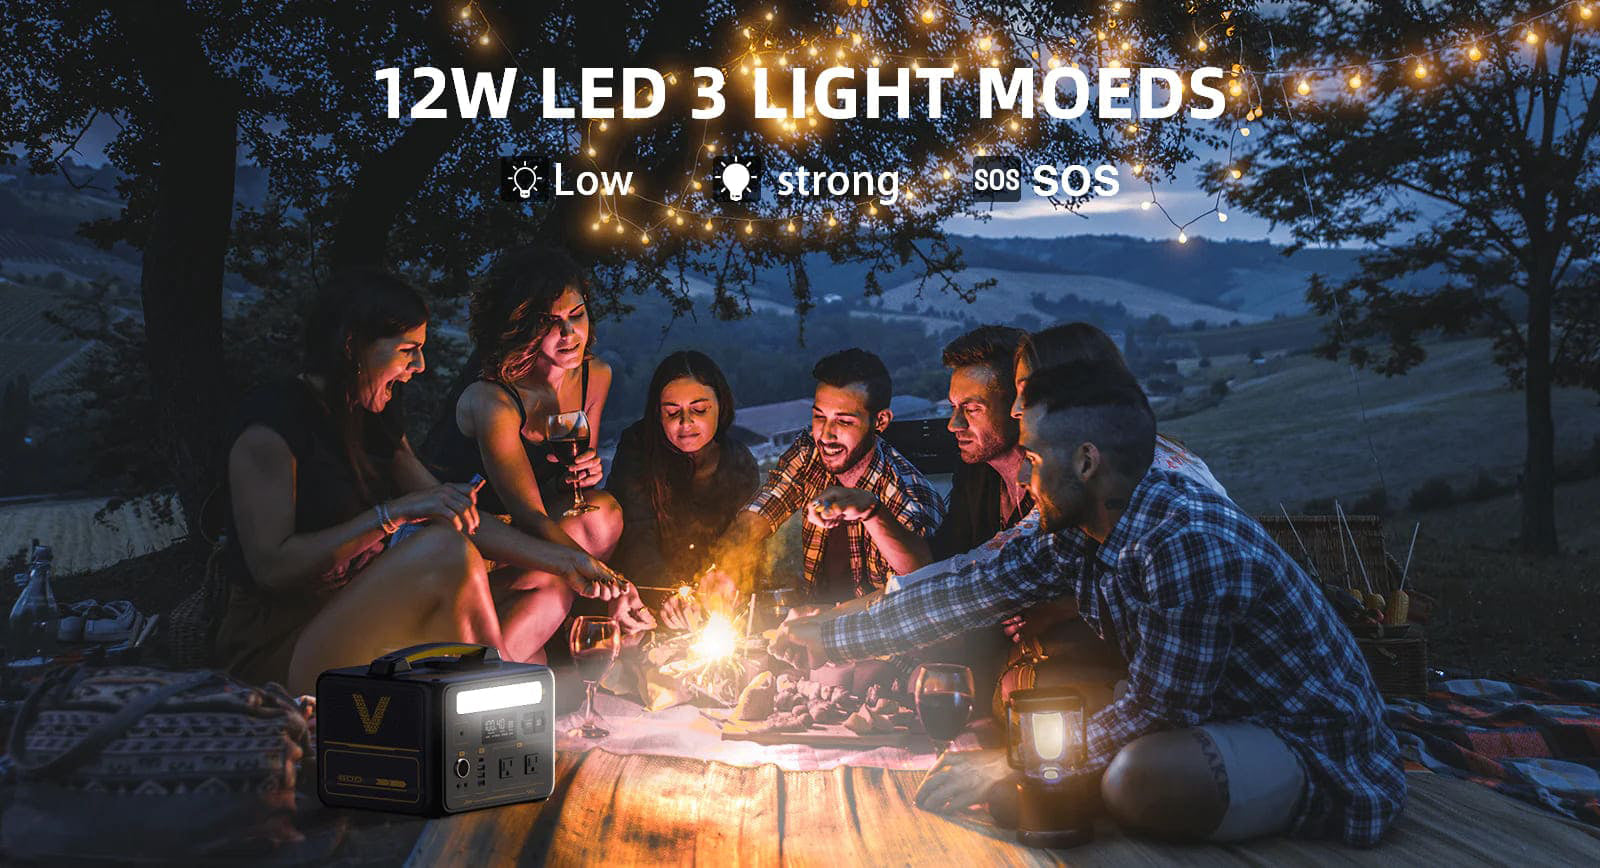 LED 3 light mode